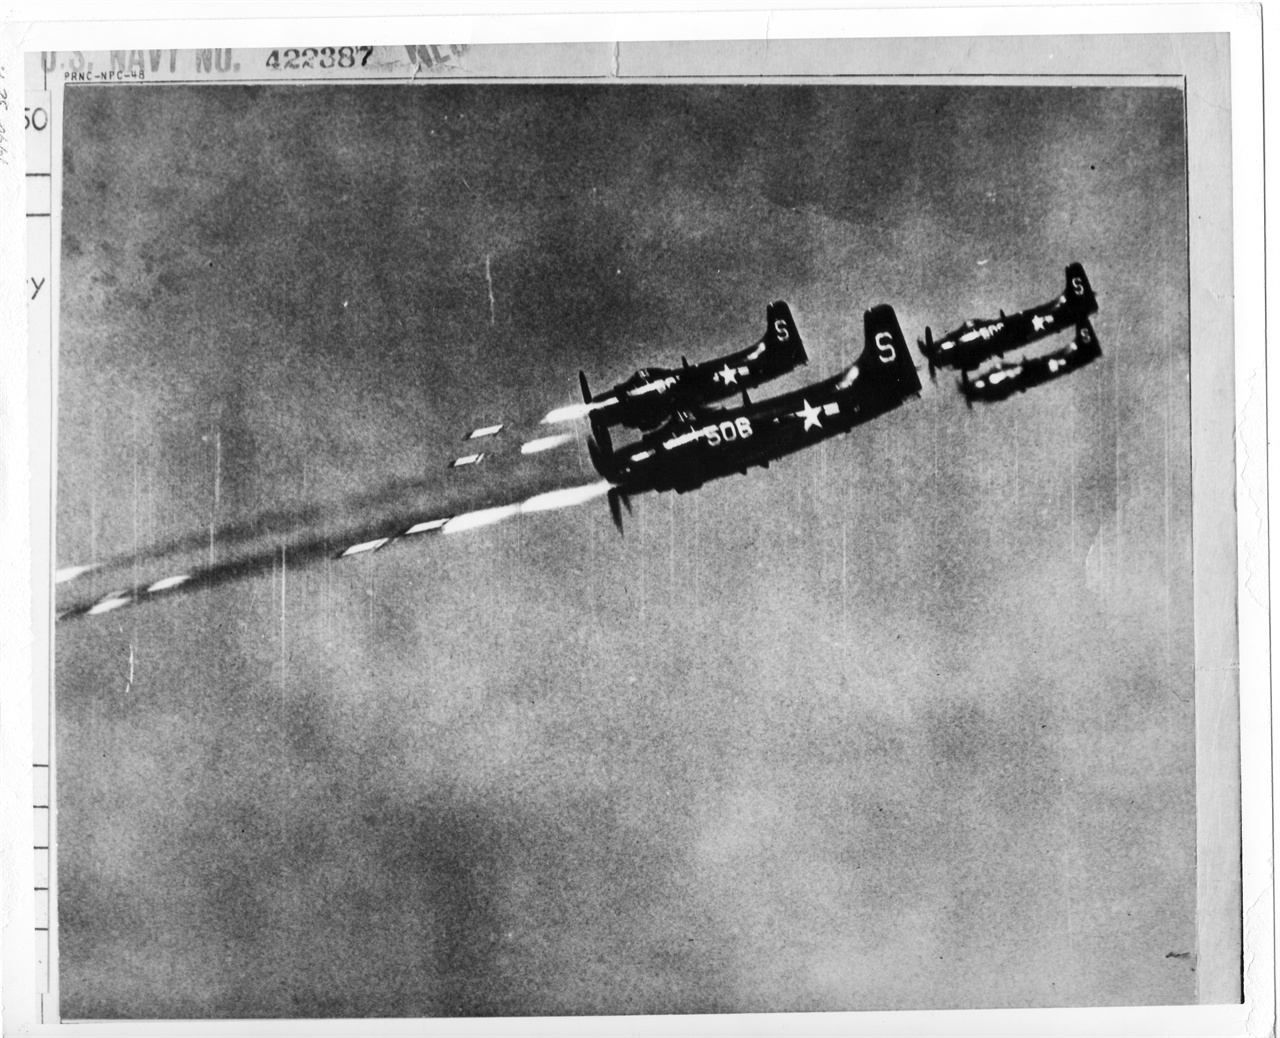  1950. 10. 24. 미 항공모함에서 출격한 미 해군 전투기가 5인치 로켓포를 북한군 진지에 발사하고 있다. 